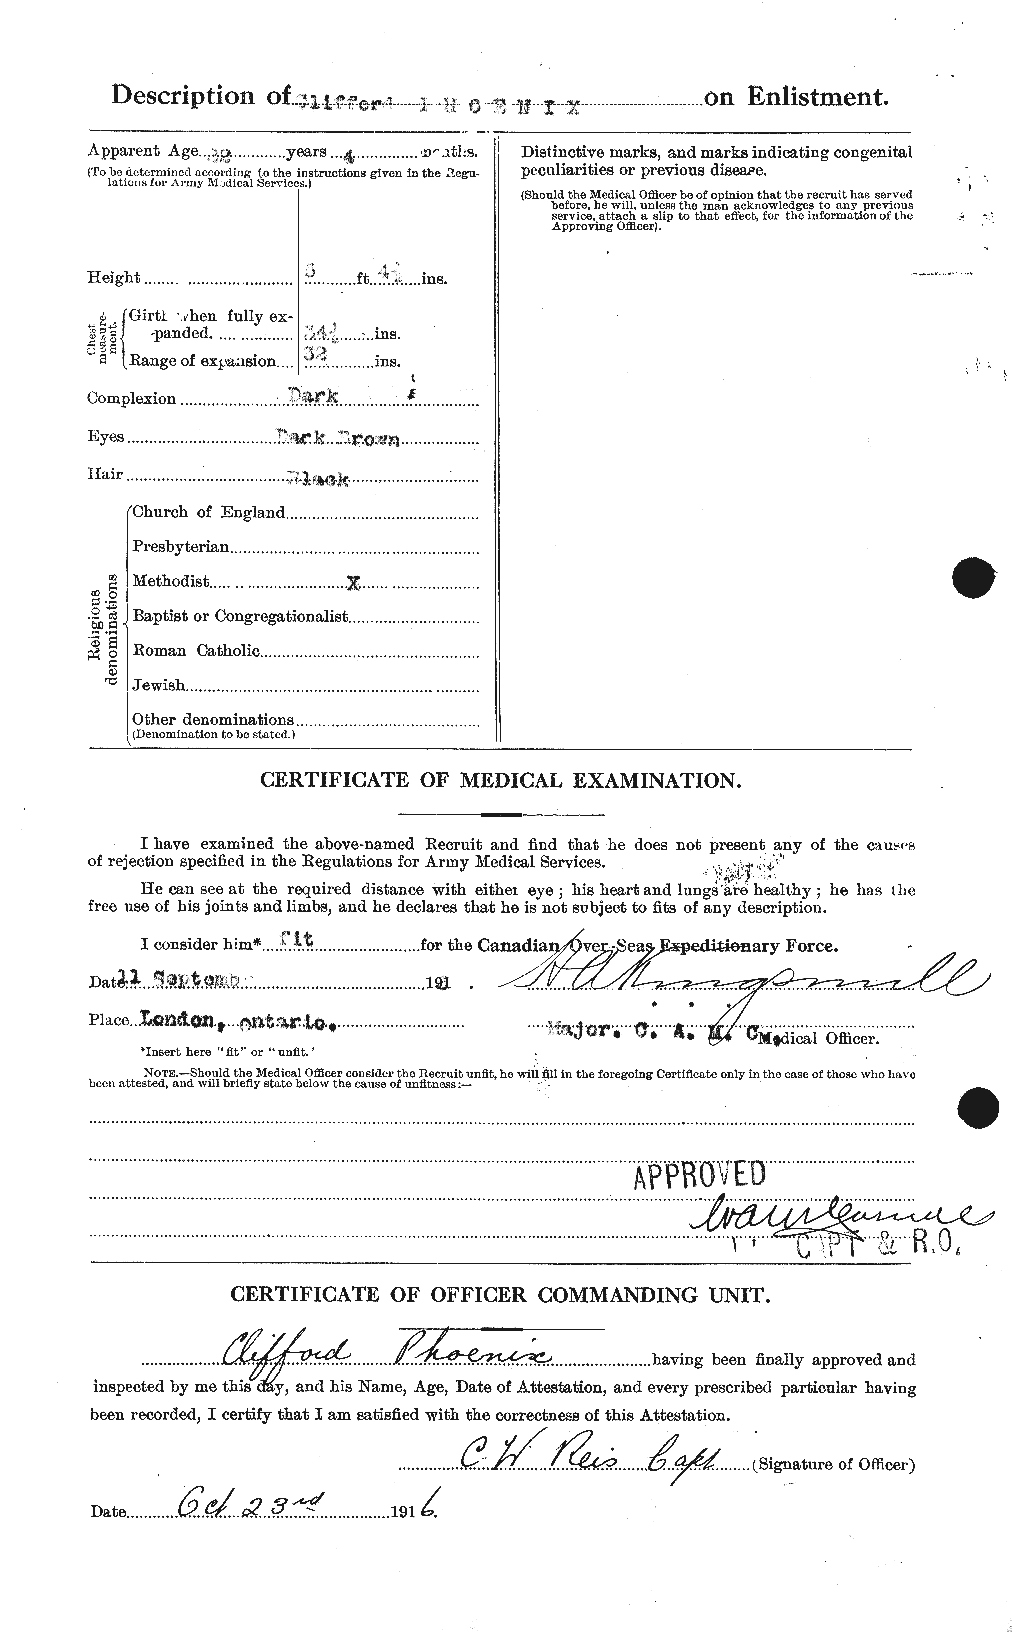 Dossiers du Personnel de la Première Guerre mondiale - CEC 578216b